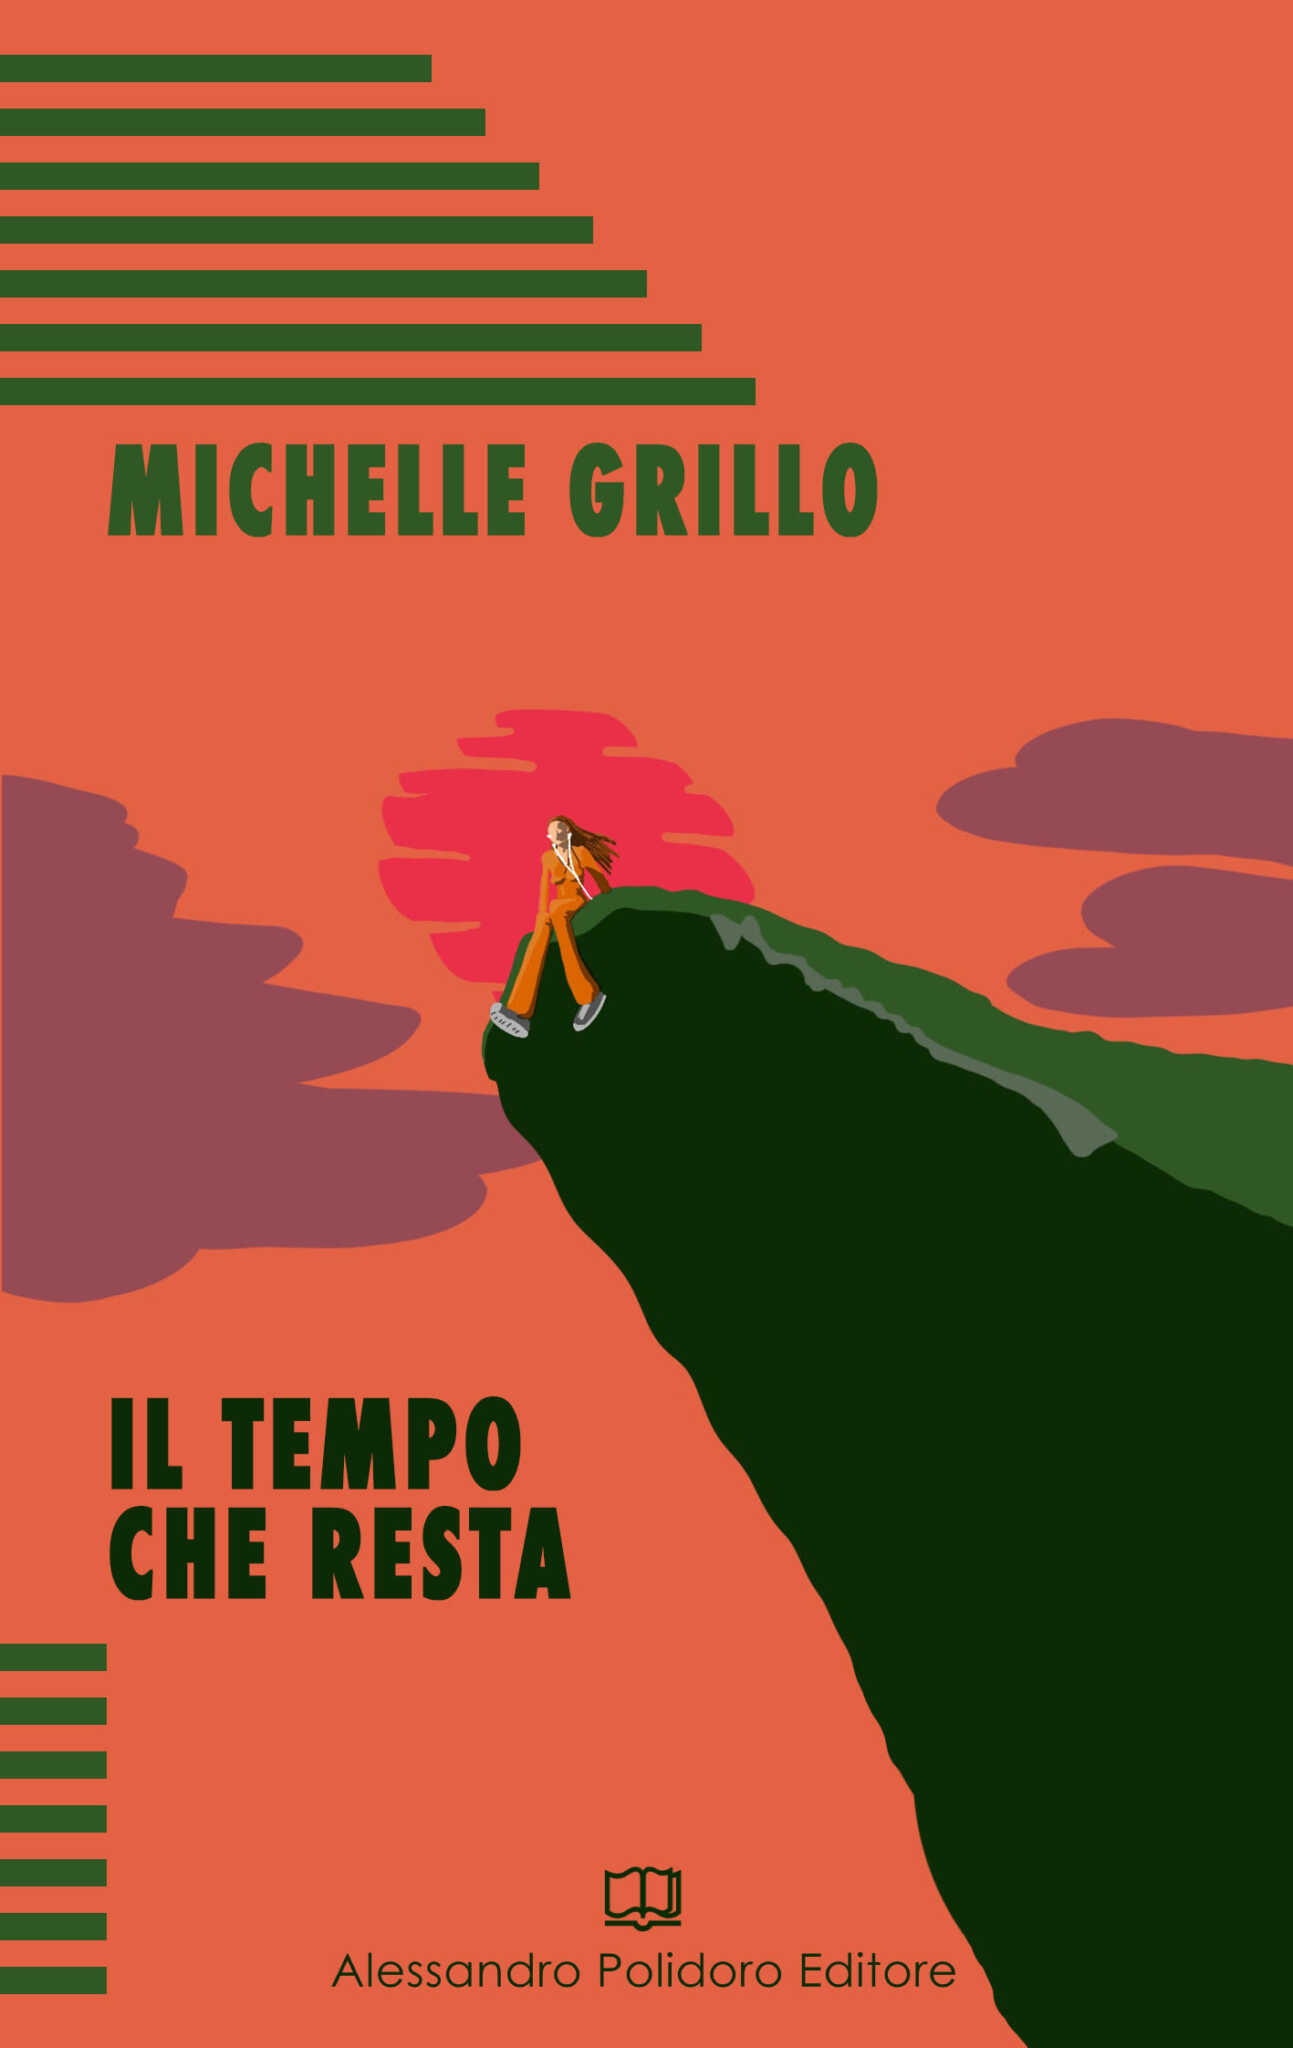 ‘Il tempo che resta’ di Michele Grillo: il 9 marzo a La Feltrinelli Salerno